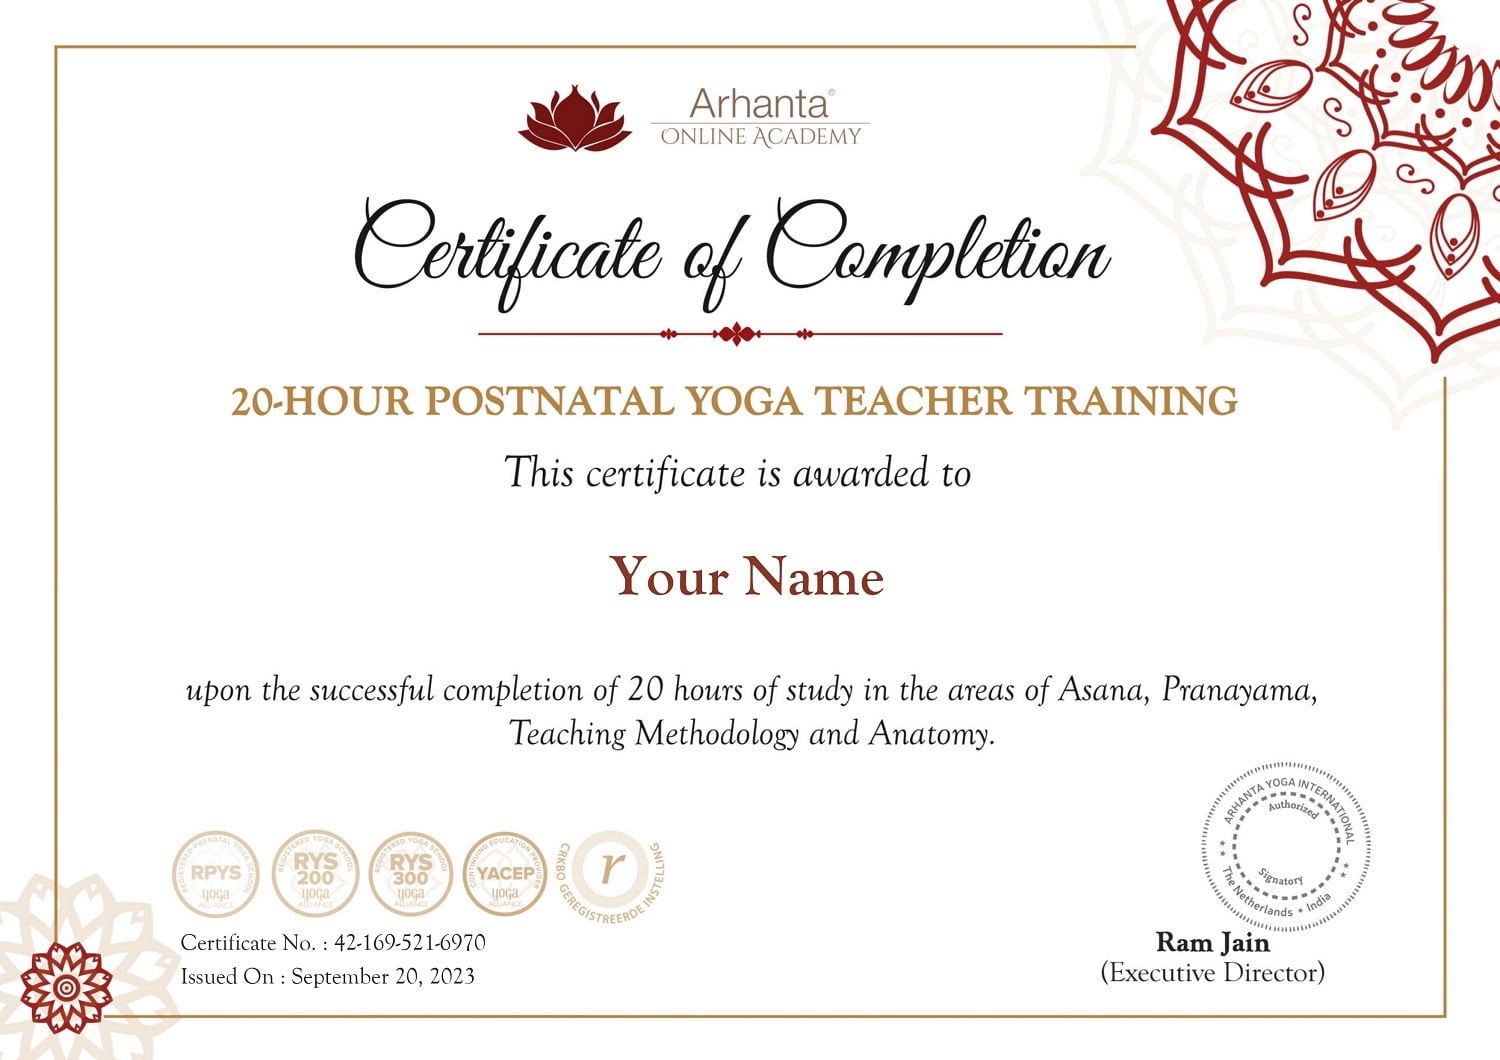 Certificado-de-treinamento-de-professores-de-ioga-pos-natal-on-line-de-20-horas